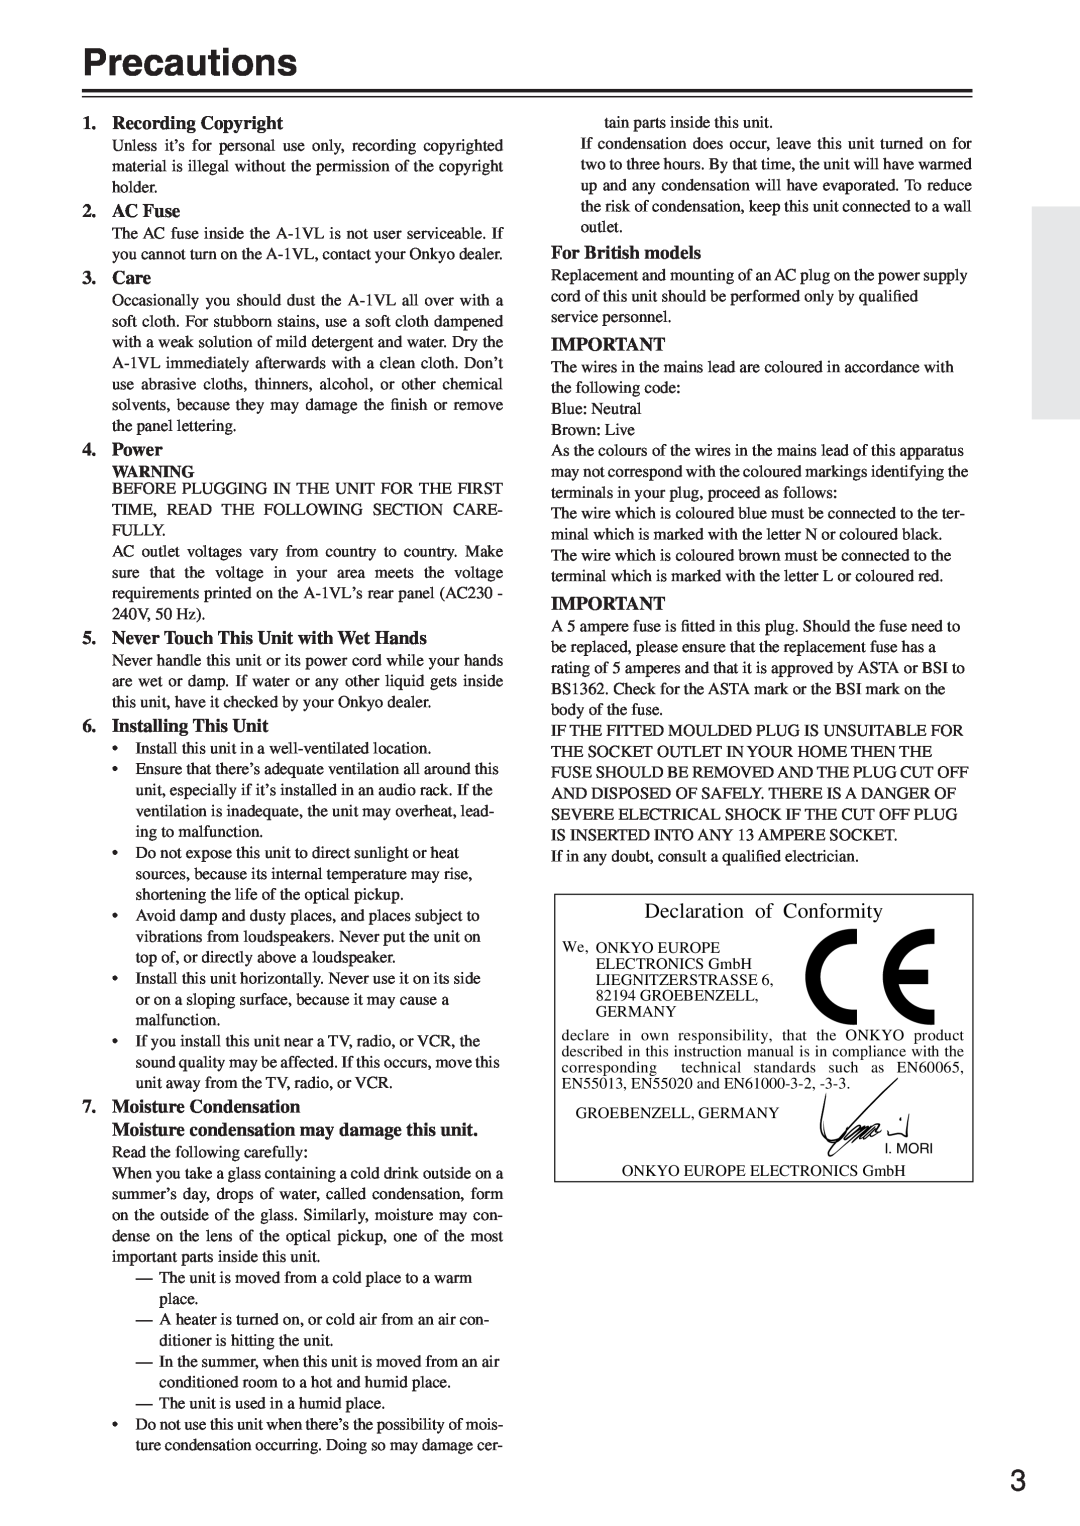 Onkyo A-1VL instruction manual Precautions, Declaration of Conformity 